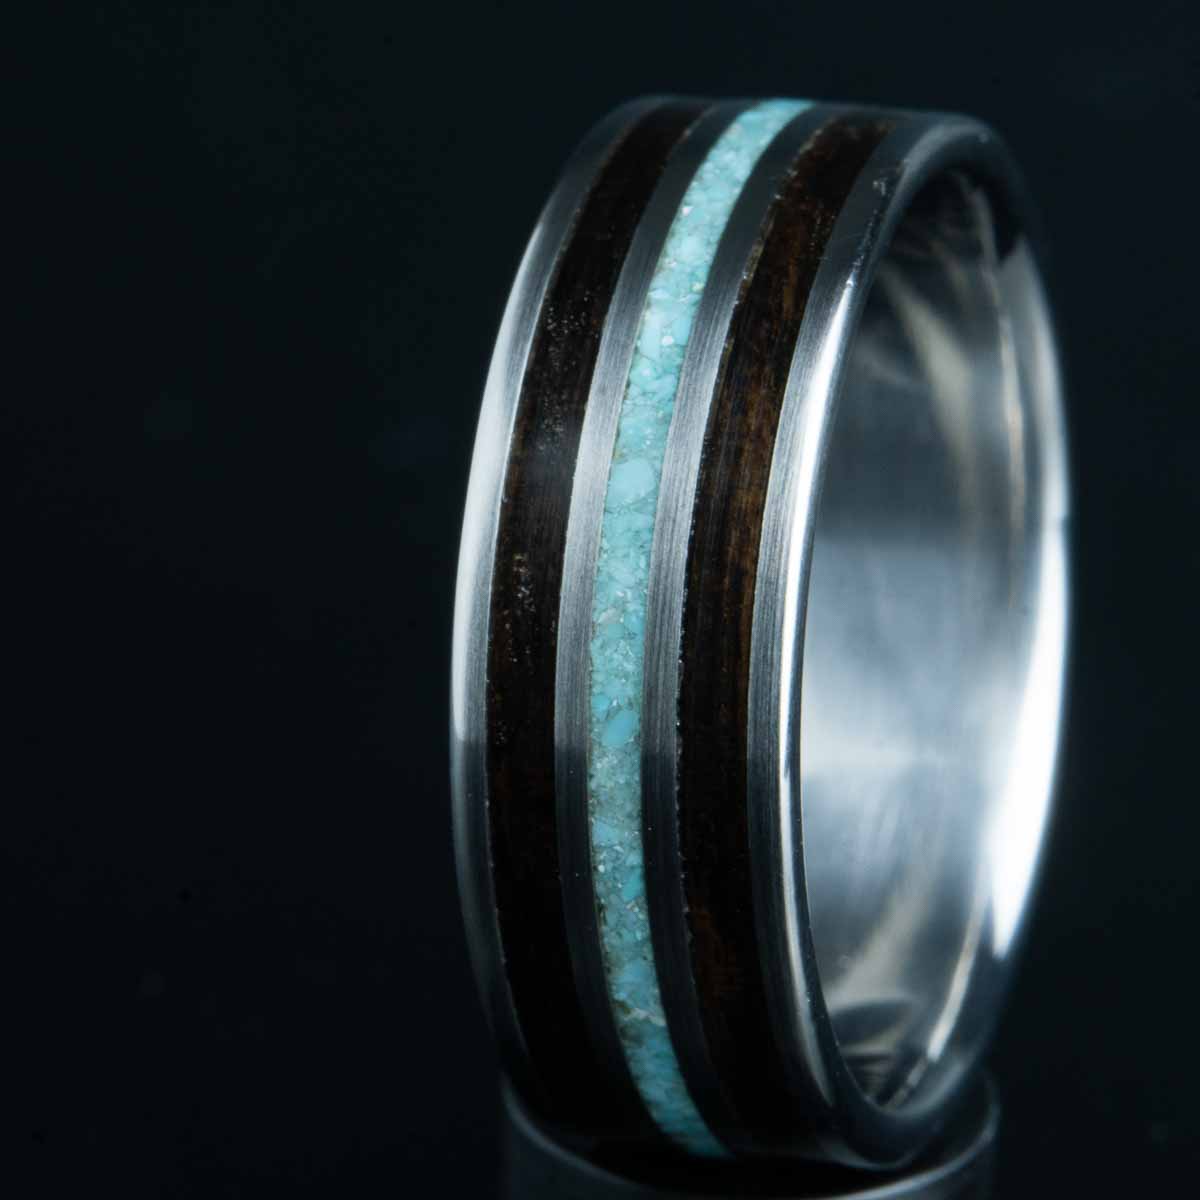 Turquoise ring with Ebony wood